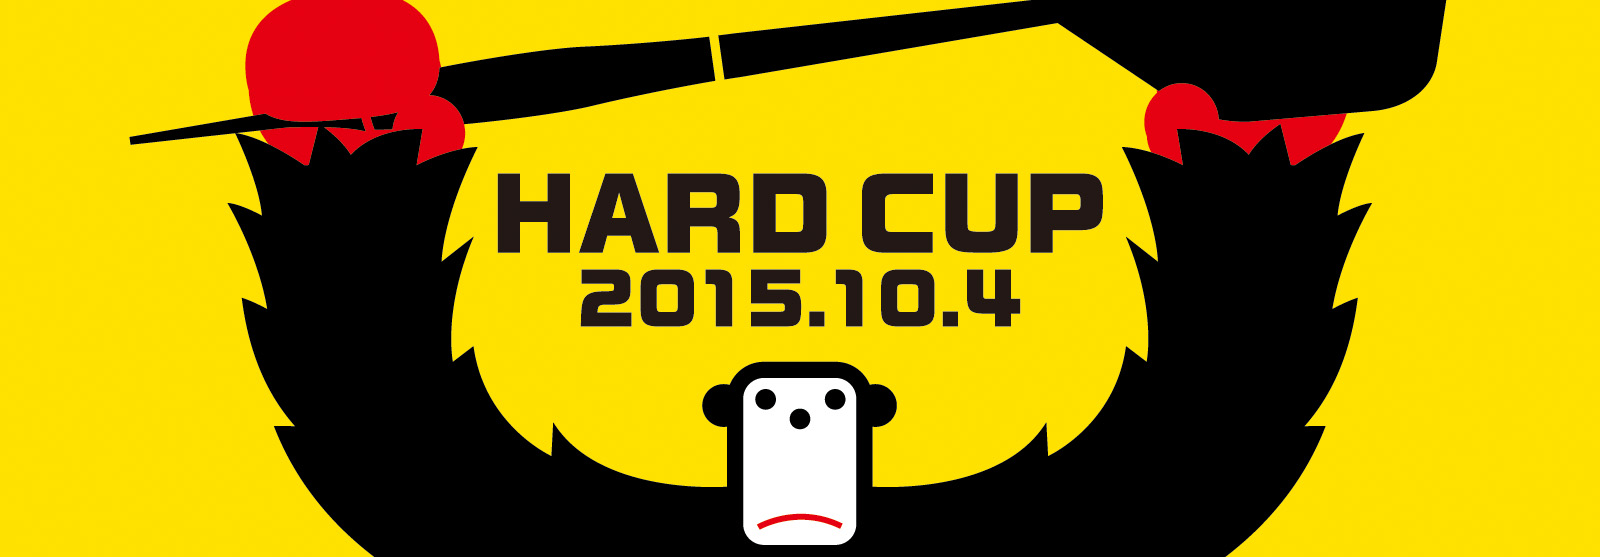 HARD CUP n[hJbv 2015N104() CqD^[~i(4Fz[)